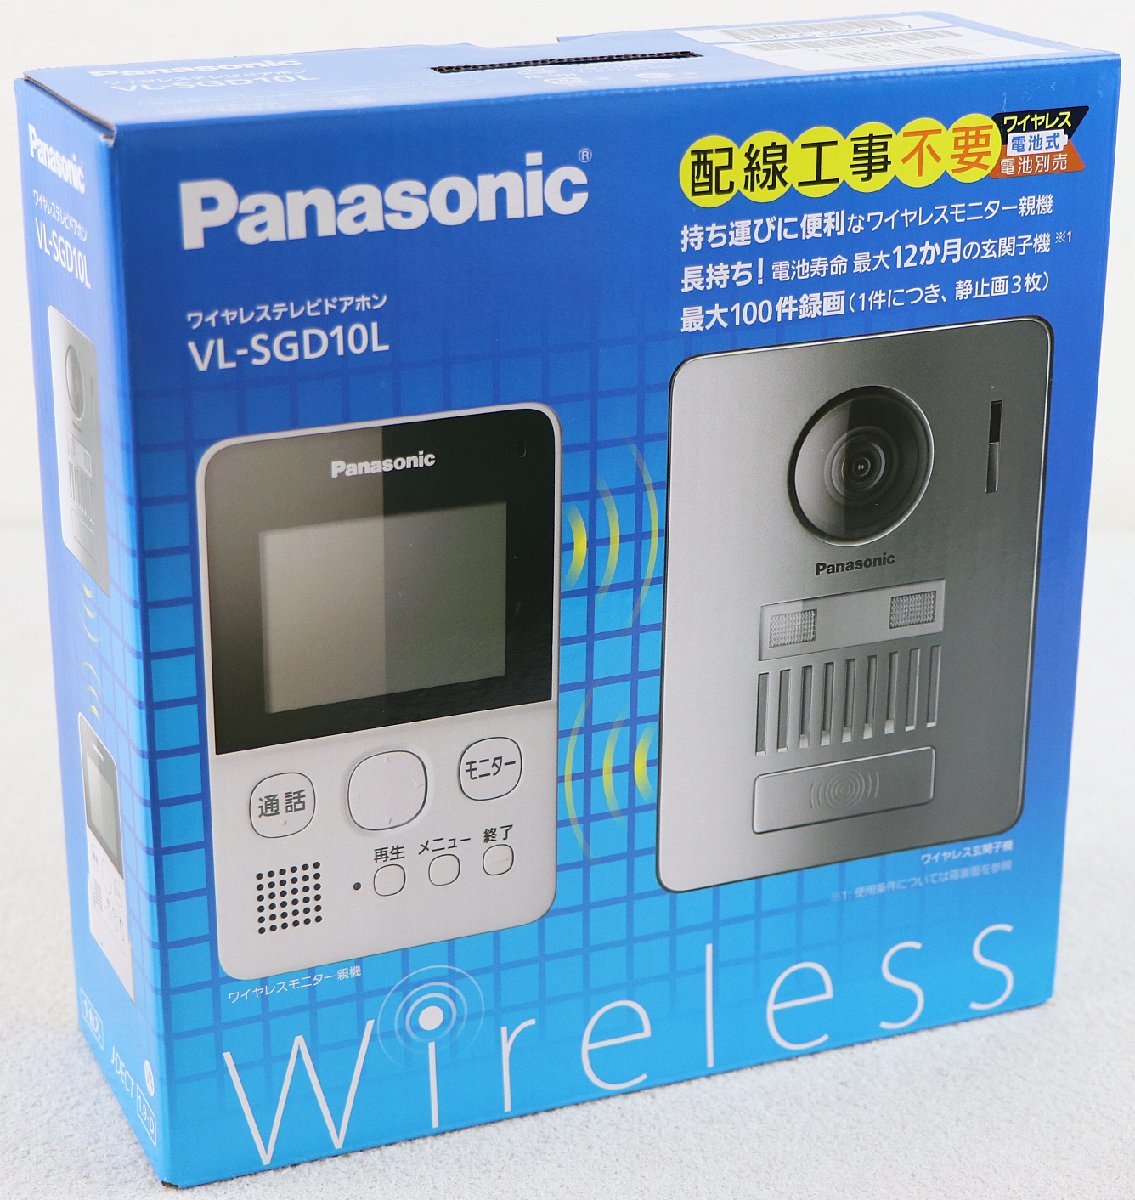 幸せなふたりに贈る結婚祝い Panasonic ワイヤレステレビドアホン VL-SGD10L